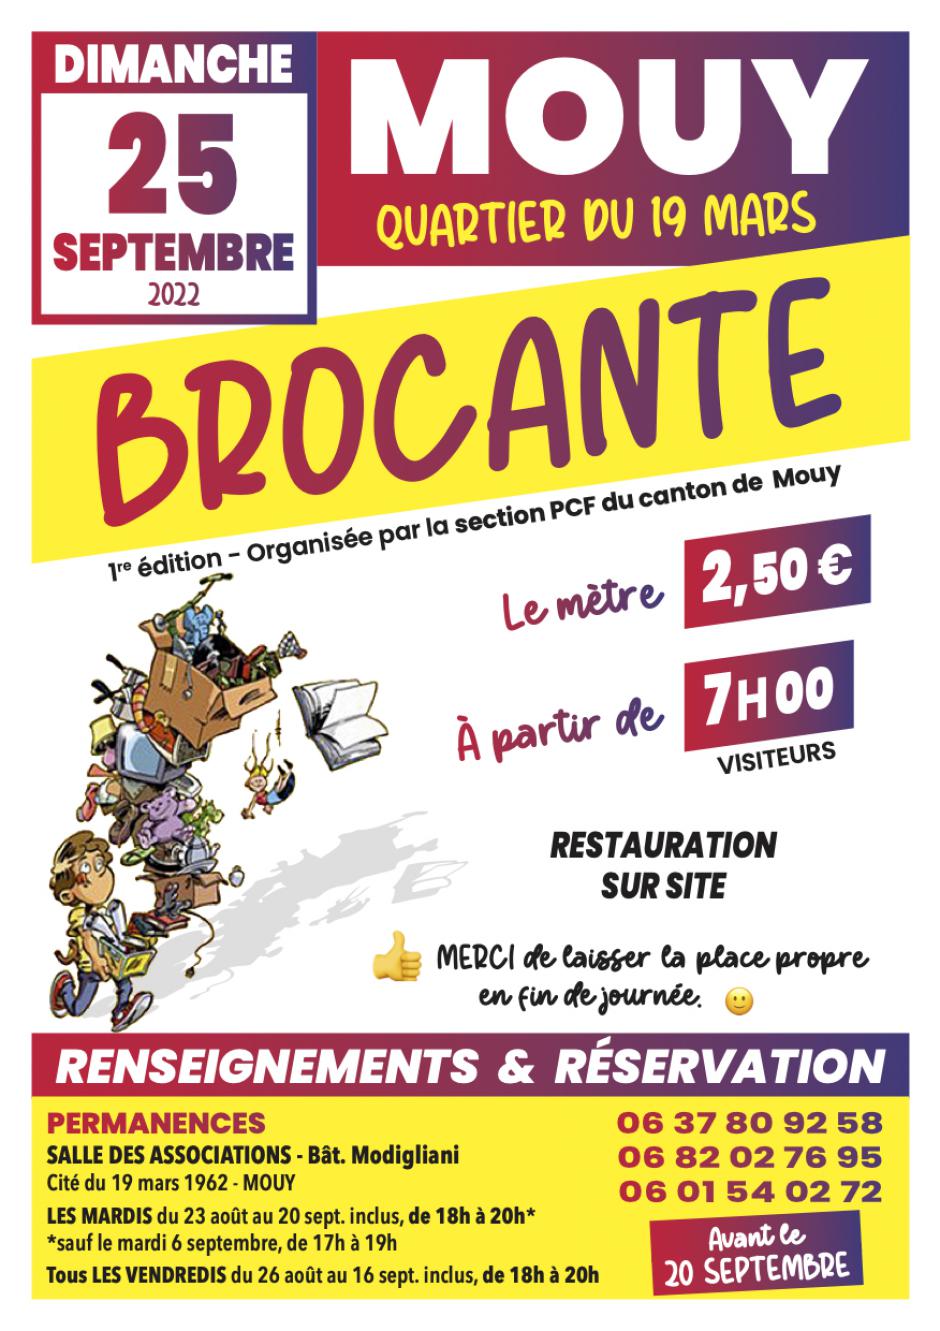 25. septembre, Mouy - Brocante organisée par la section PCF du canton de Mouy